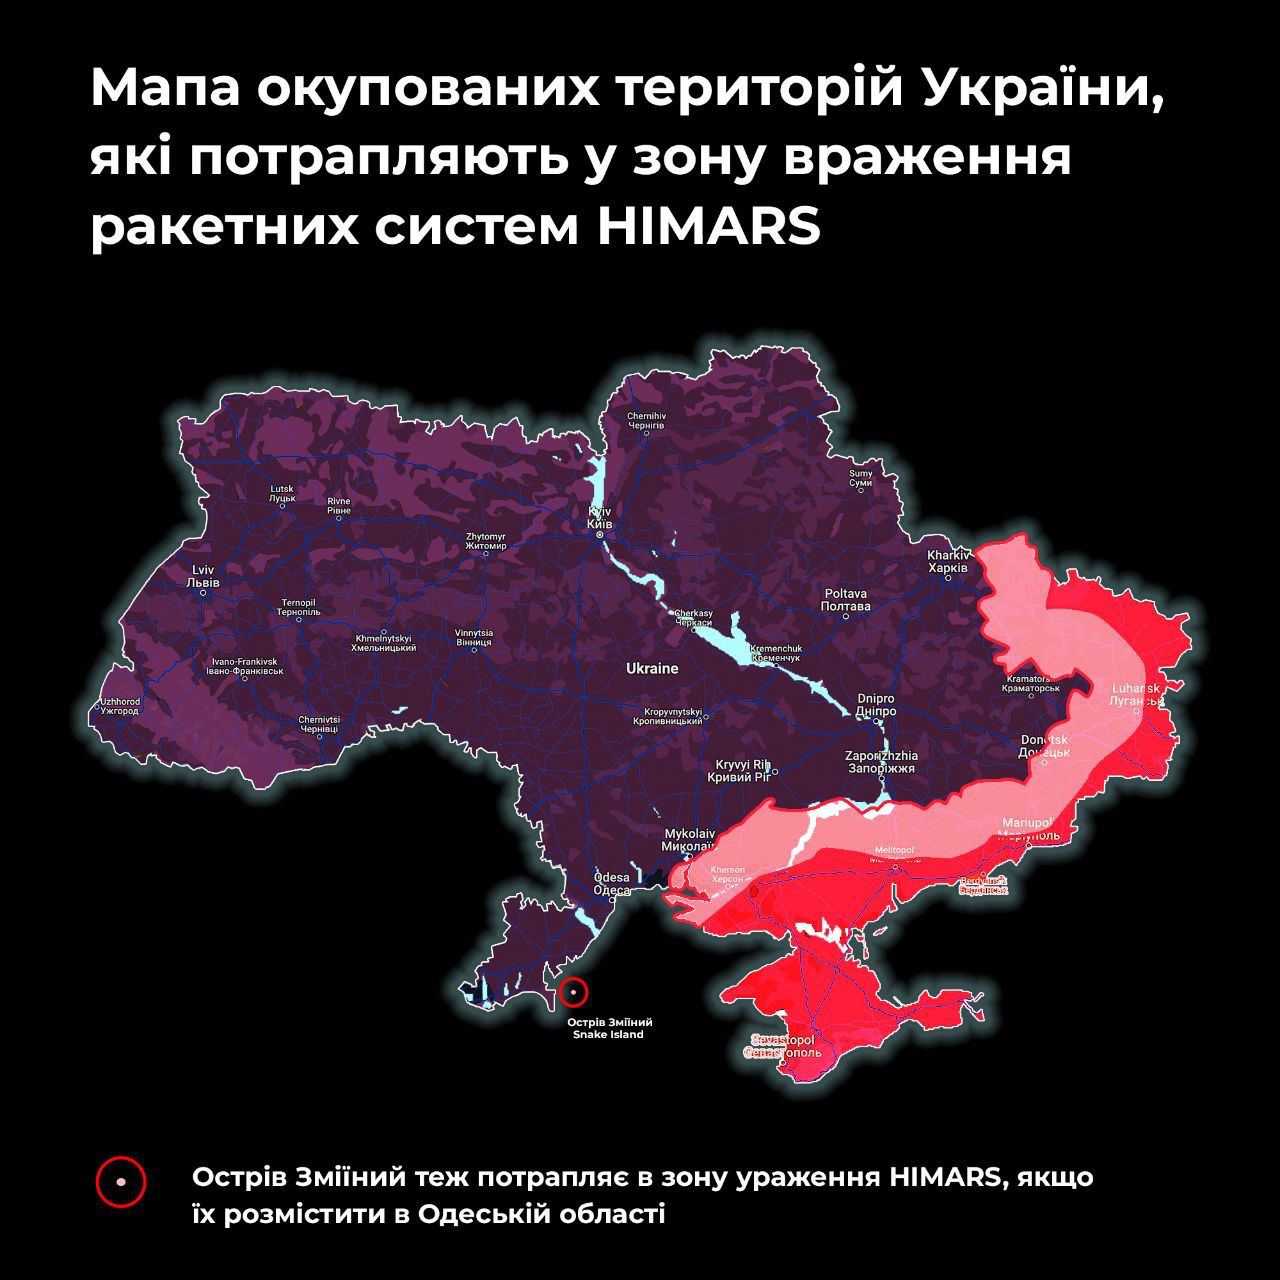 Первые системы HIMARS уже прибыли в Украину. На что способно новое оружие 3